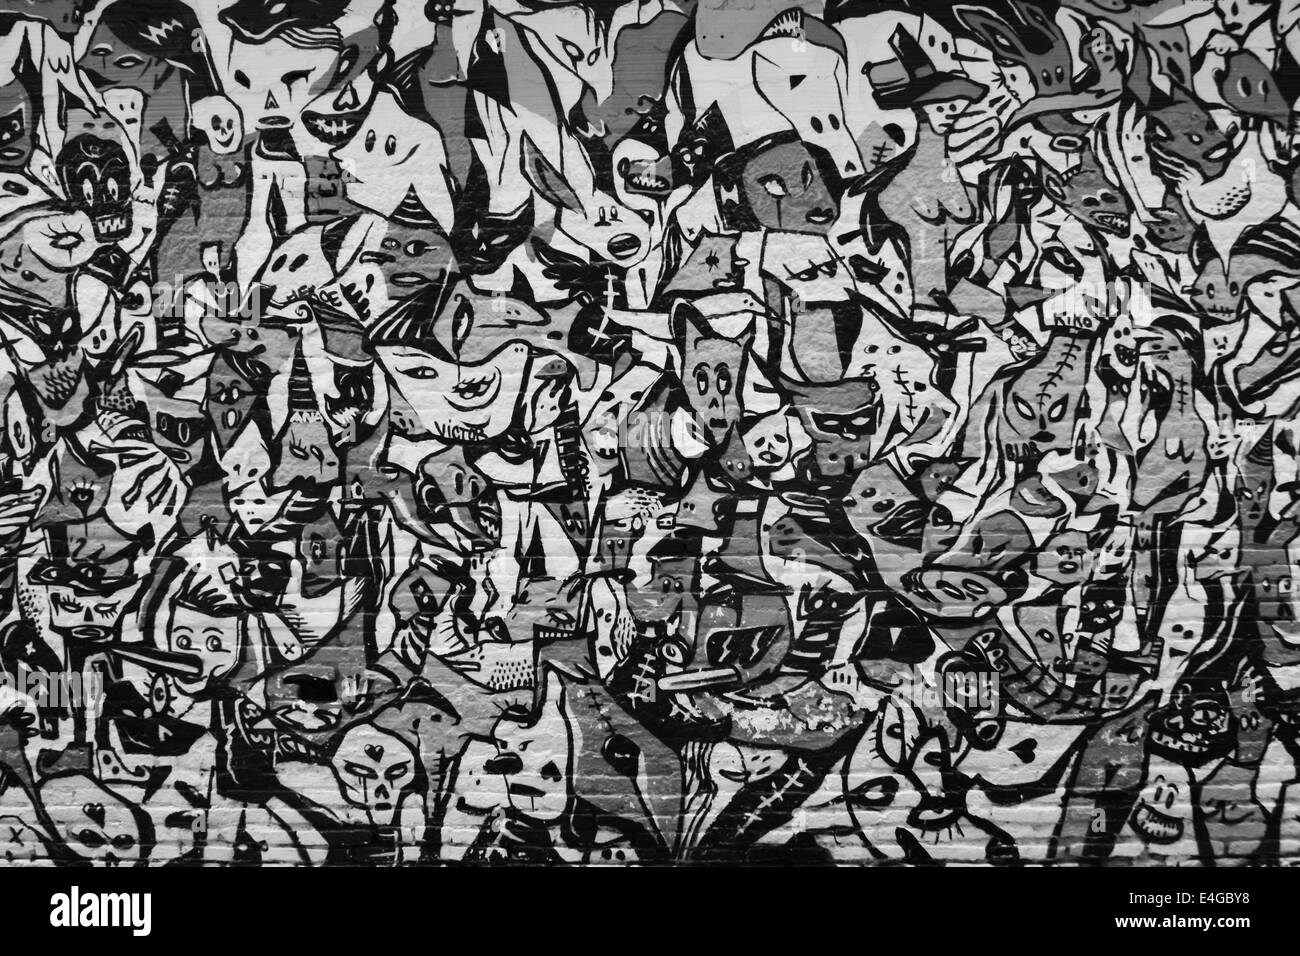 El caos, la multitud, graffiti, imagen abstracta Foto de stock